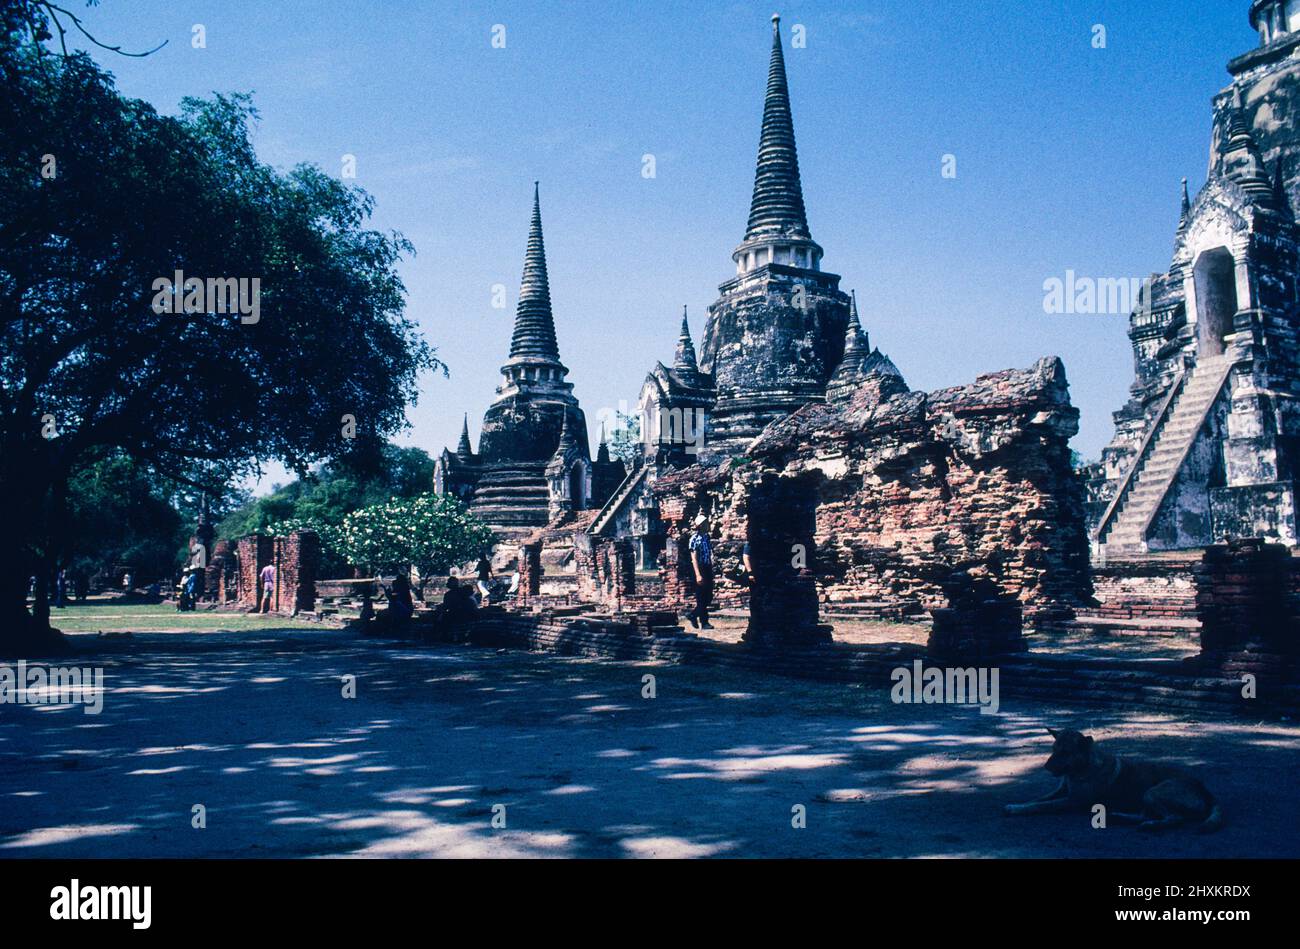 Autrefois recouvert d'or de feuilles, le Chedi du temple Wat Phra si Sanphet d'Ayutthaya est encore impressionnant. L'ancienne capitale de Siam a été conquise par une armée de Birmese en 1767, puis a été mise à sac et partiellement détruite. Il y a encore un sens de l'ancienne splendeur du grand temple. Banque D'Images